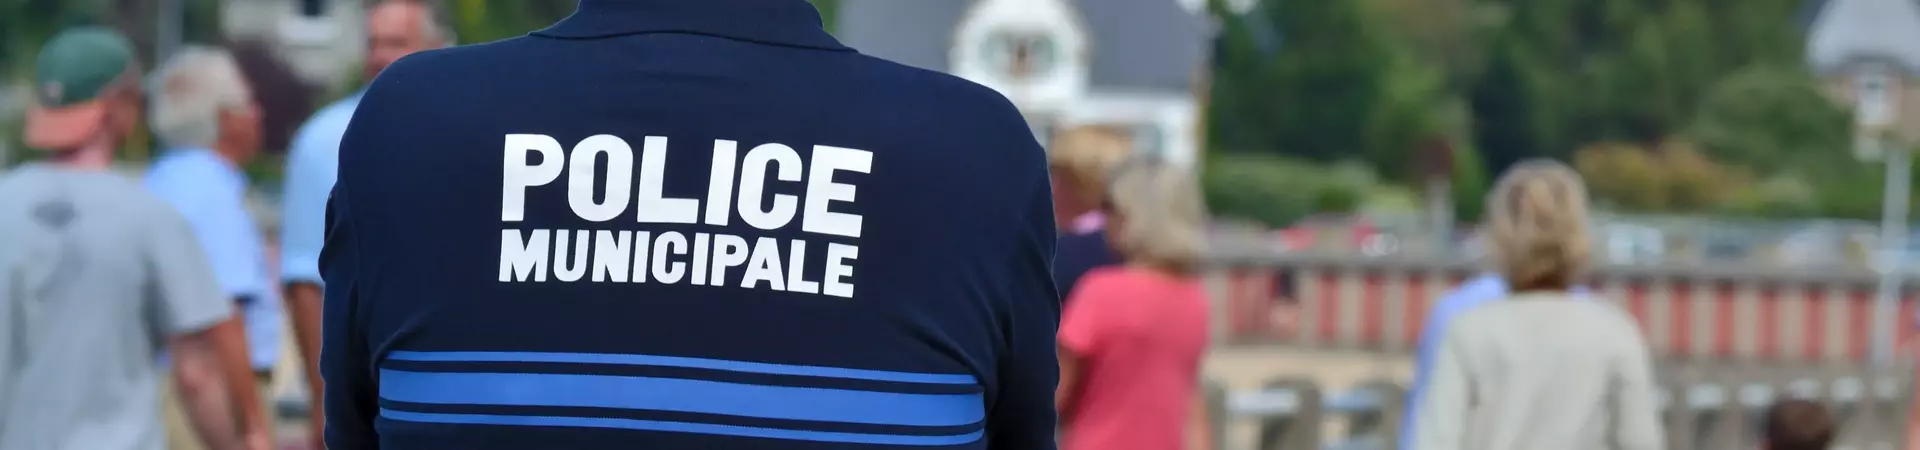 La police municipal de Saint-Ay (45) Loiret